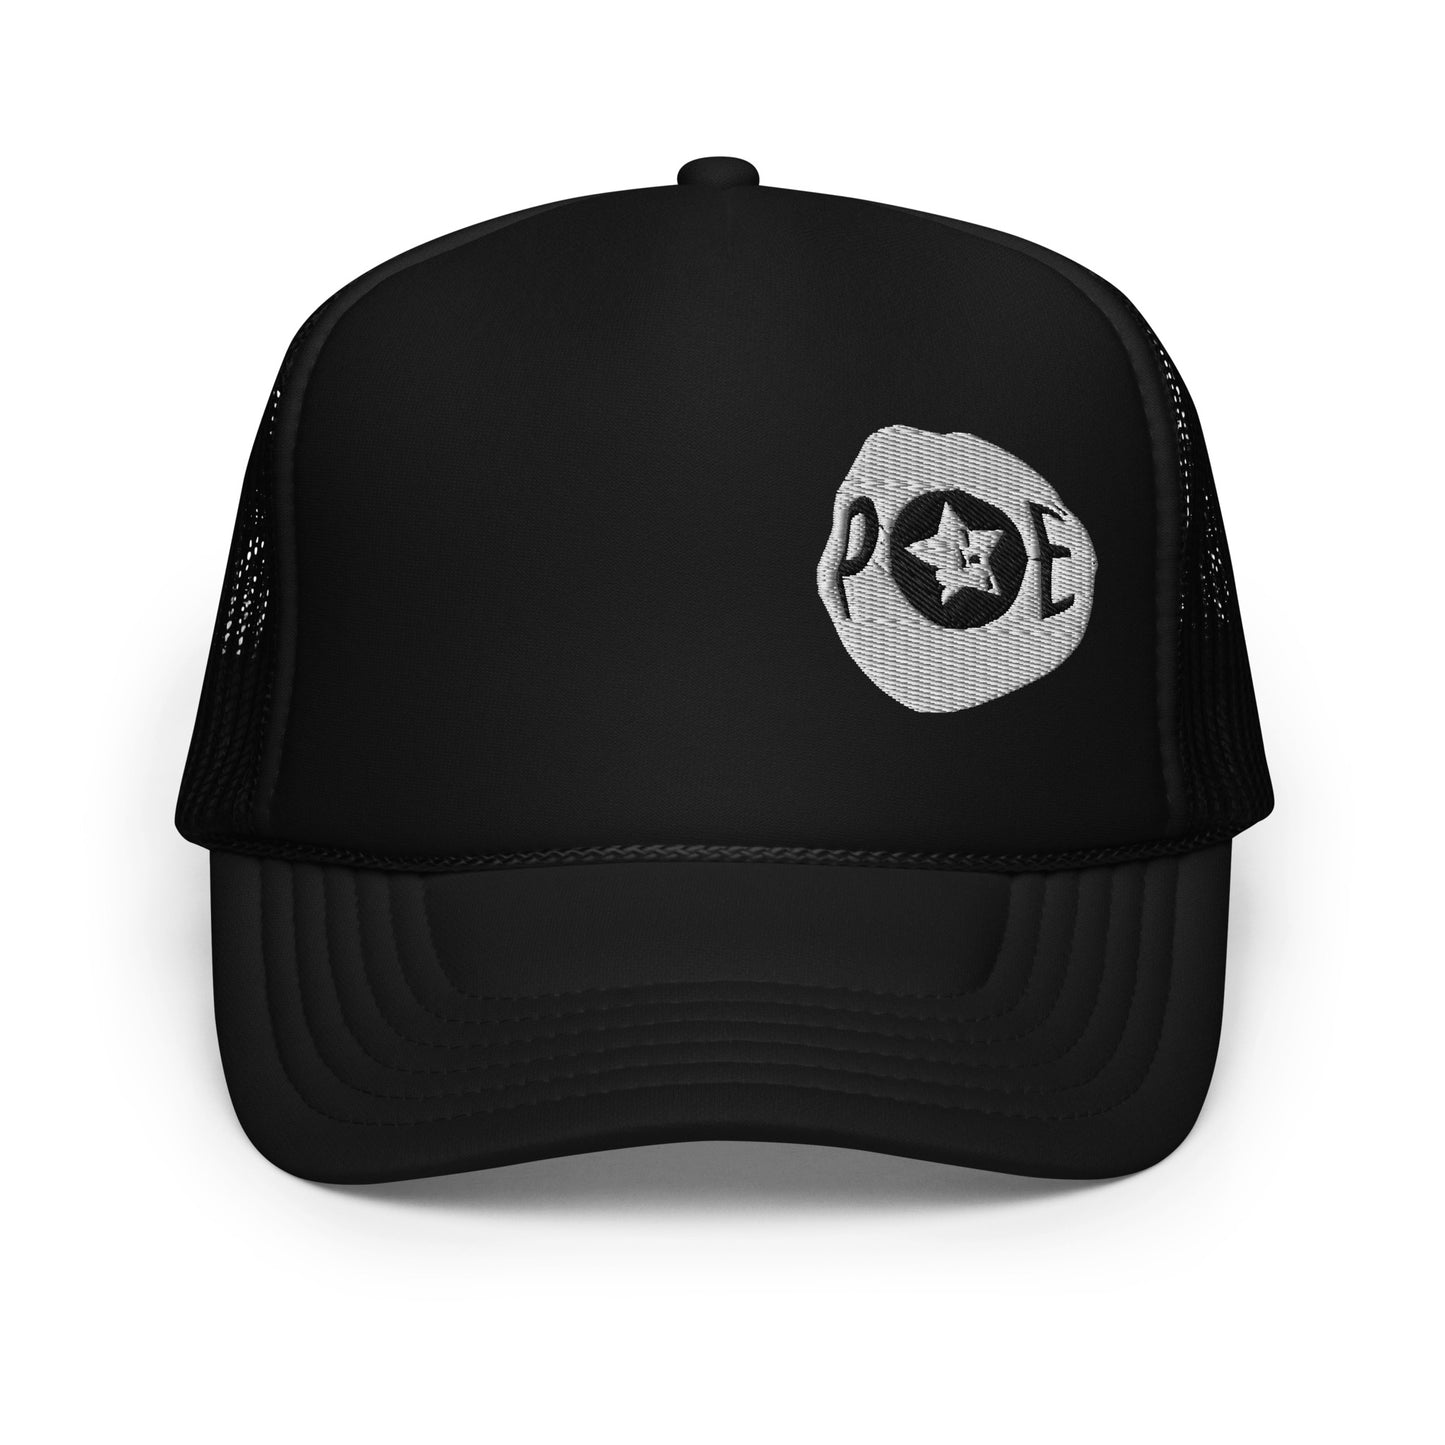 POE Trucker Hat